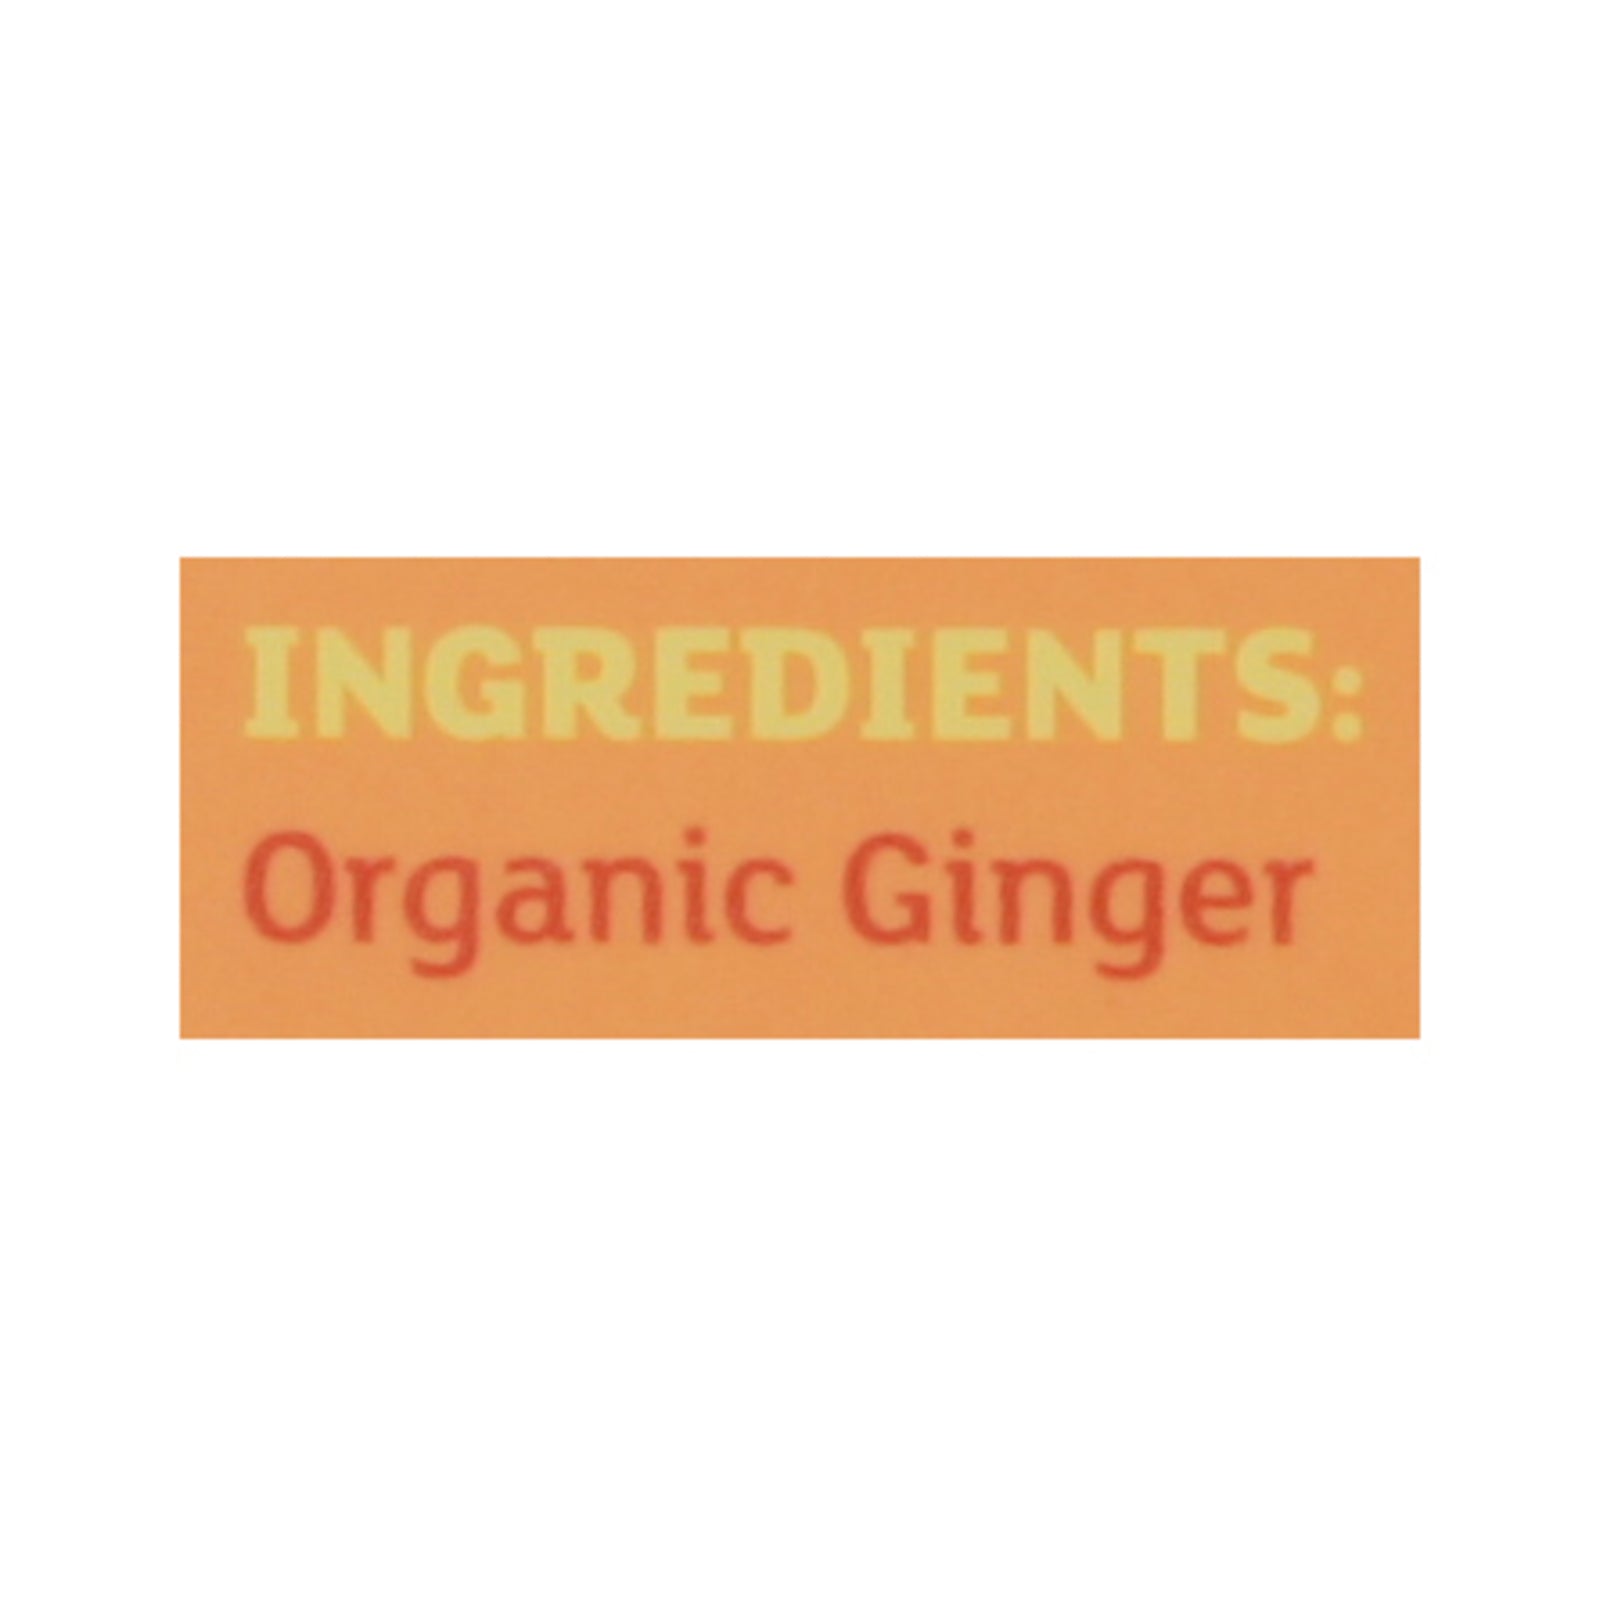 Equal Exchange - Tea Ginger - Case Of 6-20 Ct